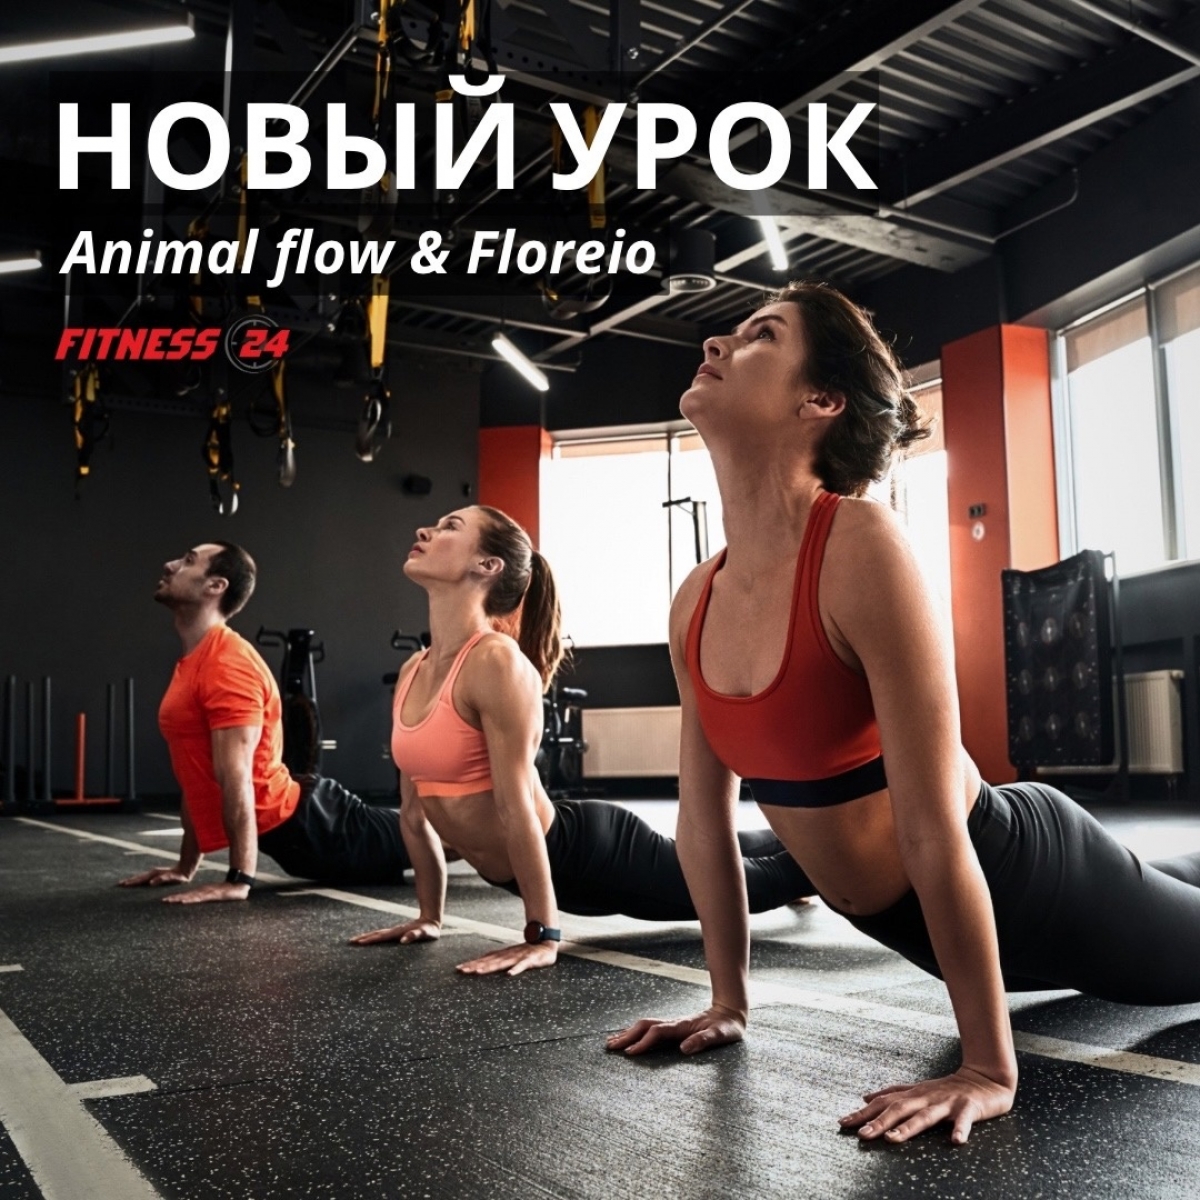 Animal flow & Floreio - НОВЫЙ урок!